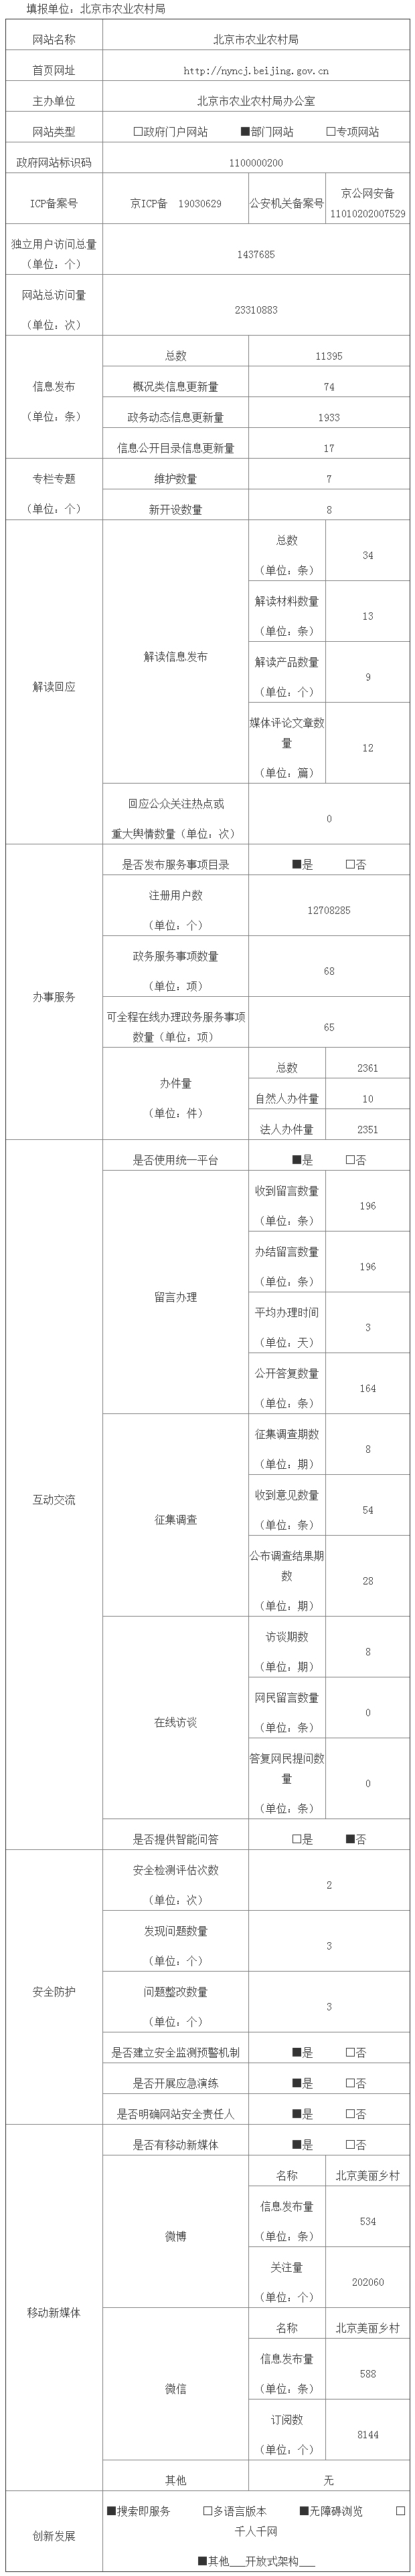 北京市農業農村局2019年政府網站年度工作報表